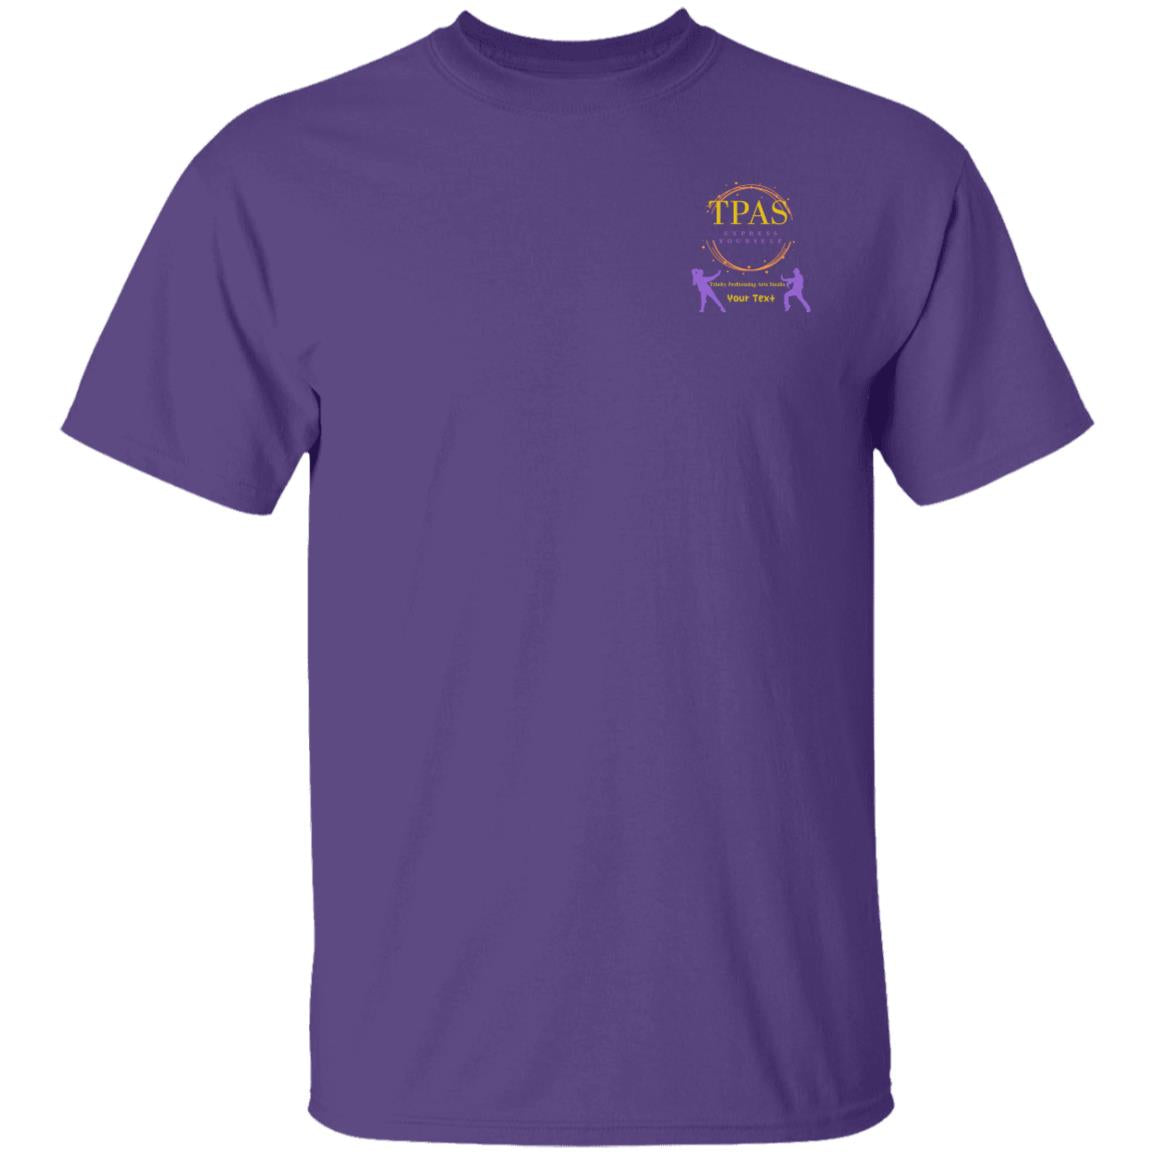 TPAS 100% Cotton T-Shirt